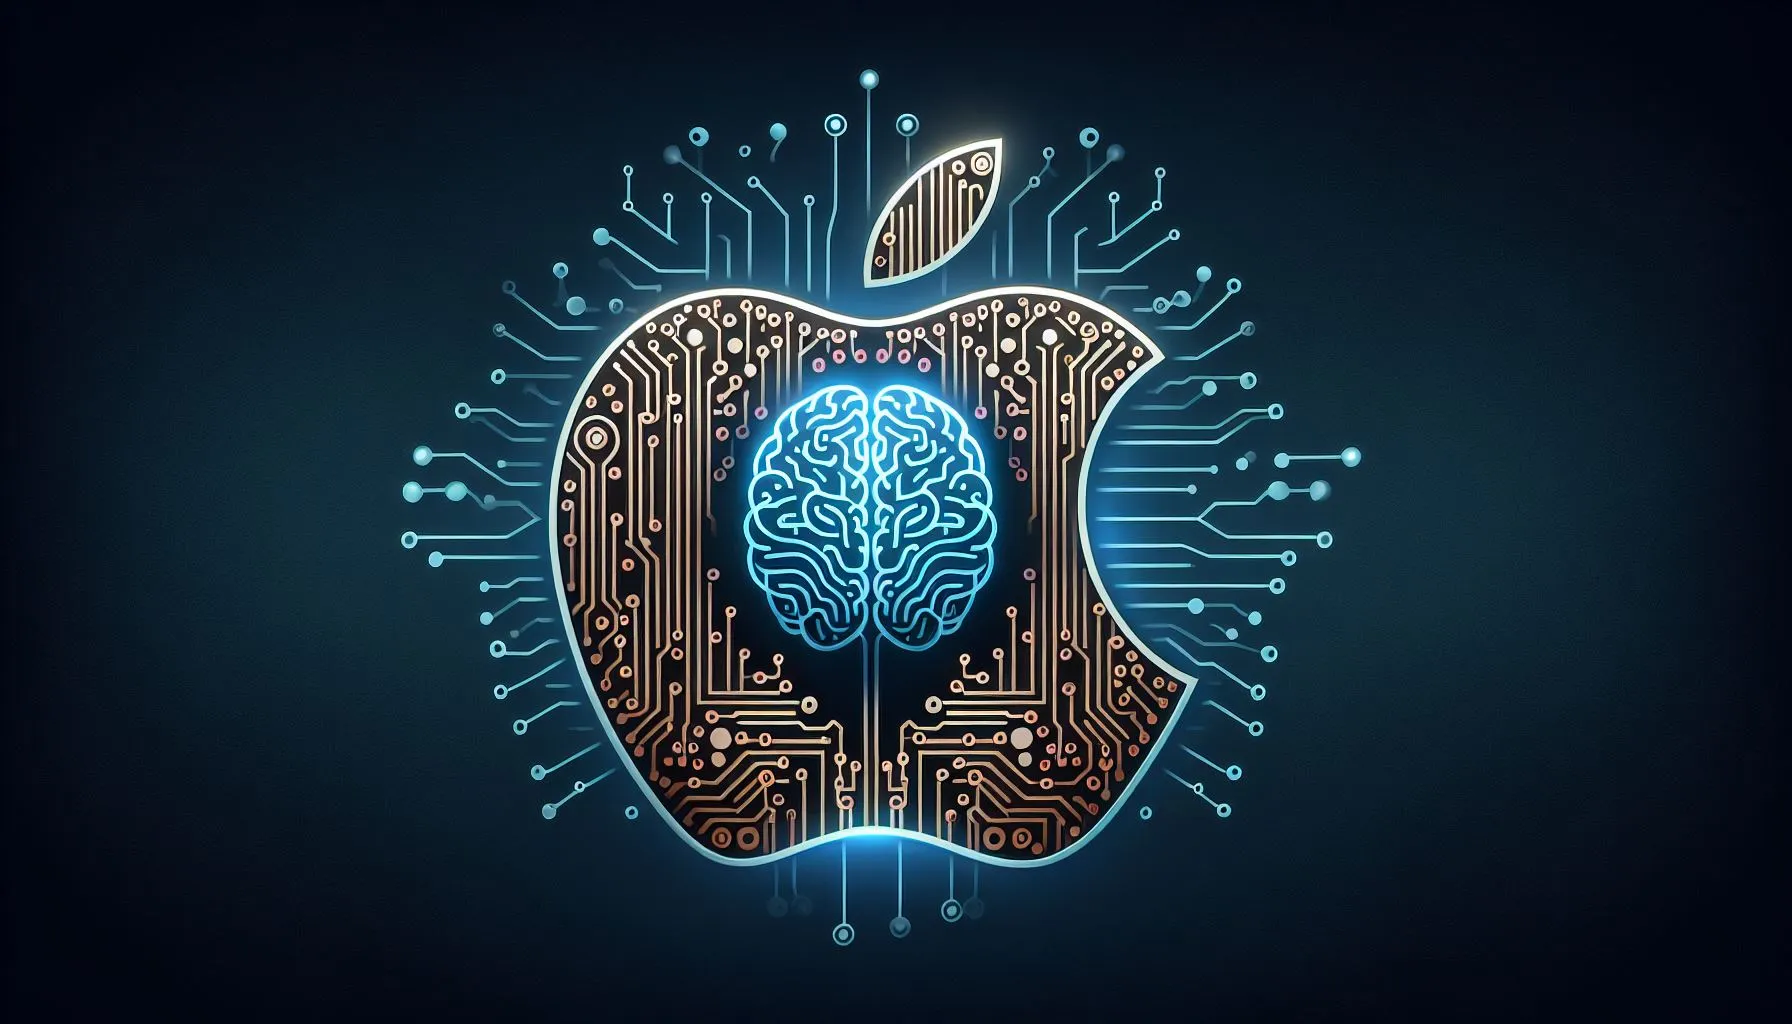 Hệ thống AI mới của Apple có thể vượt qua cả GPT-4